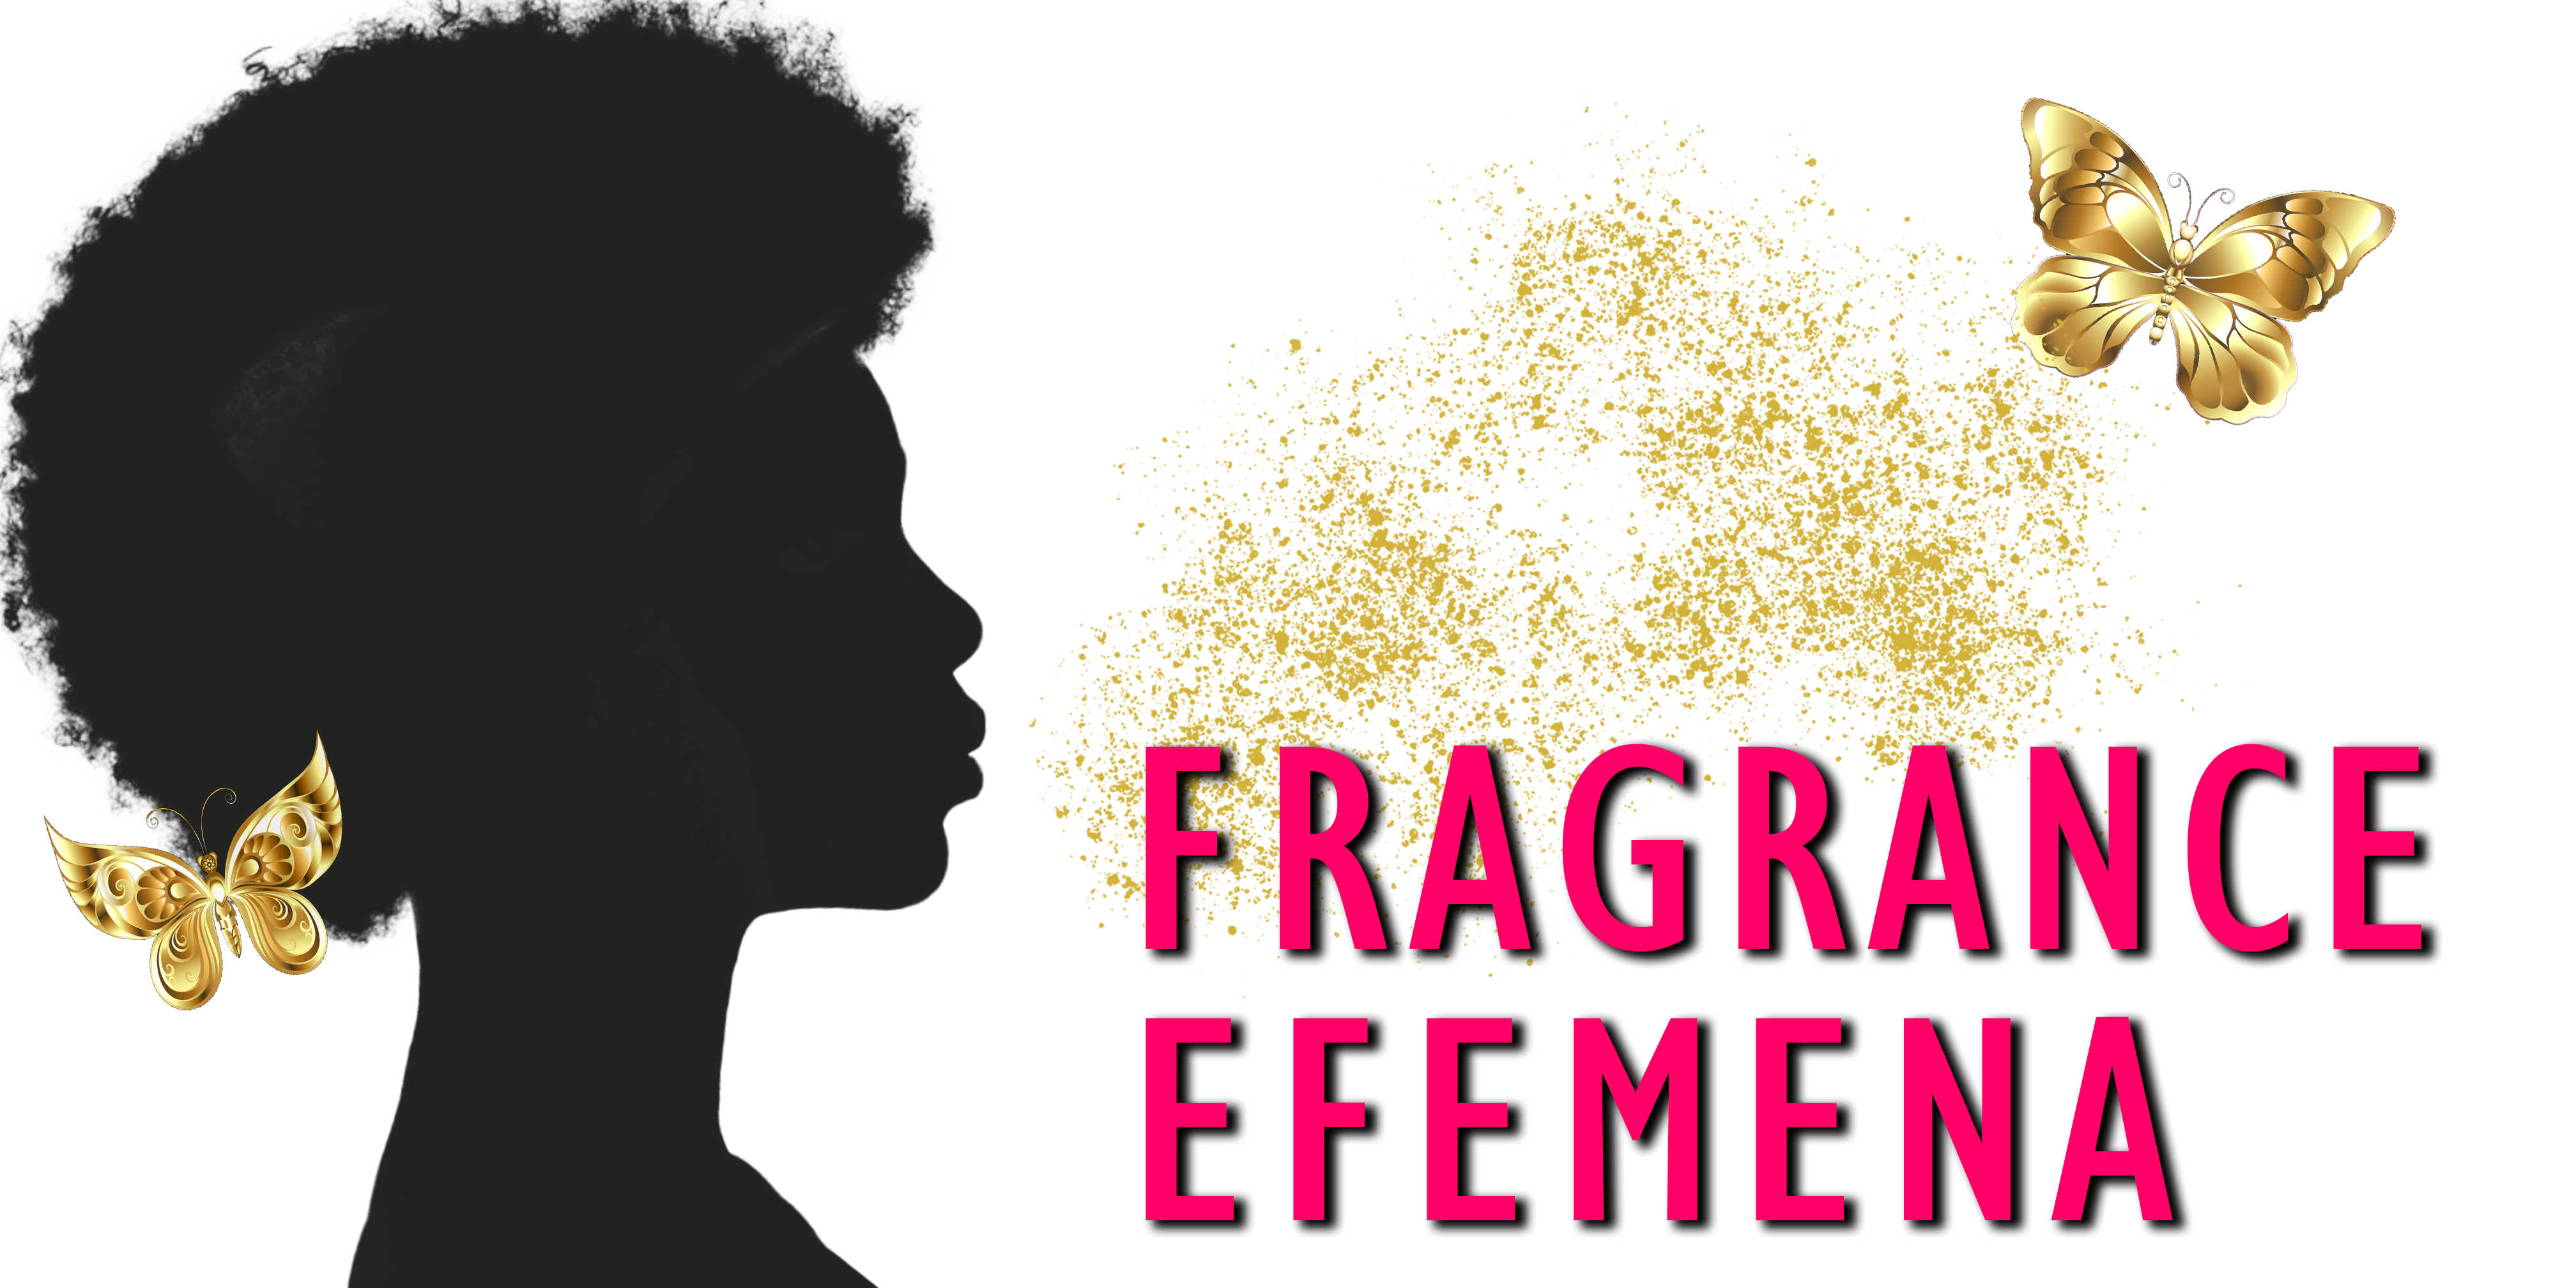 Fragrance Efemena